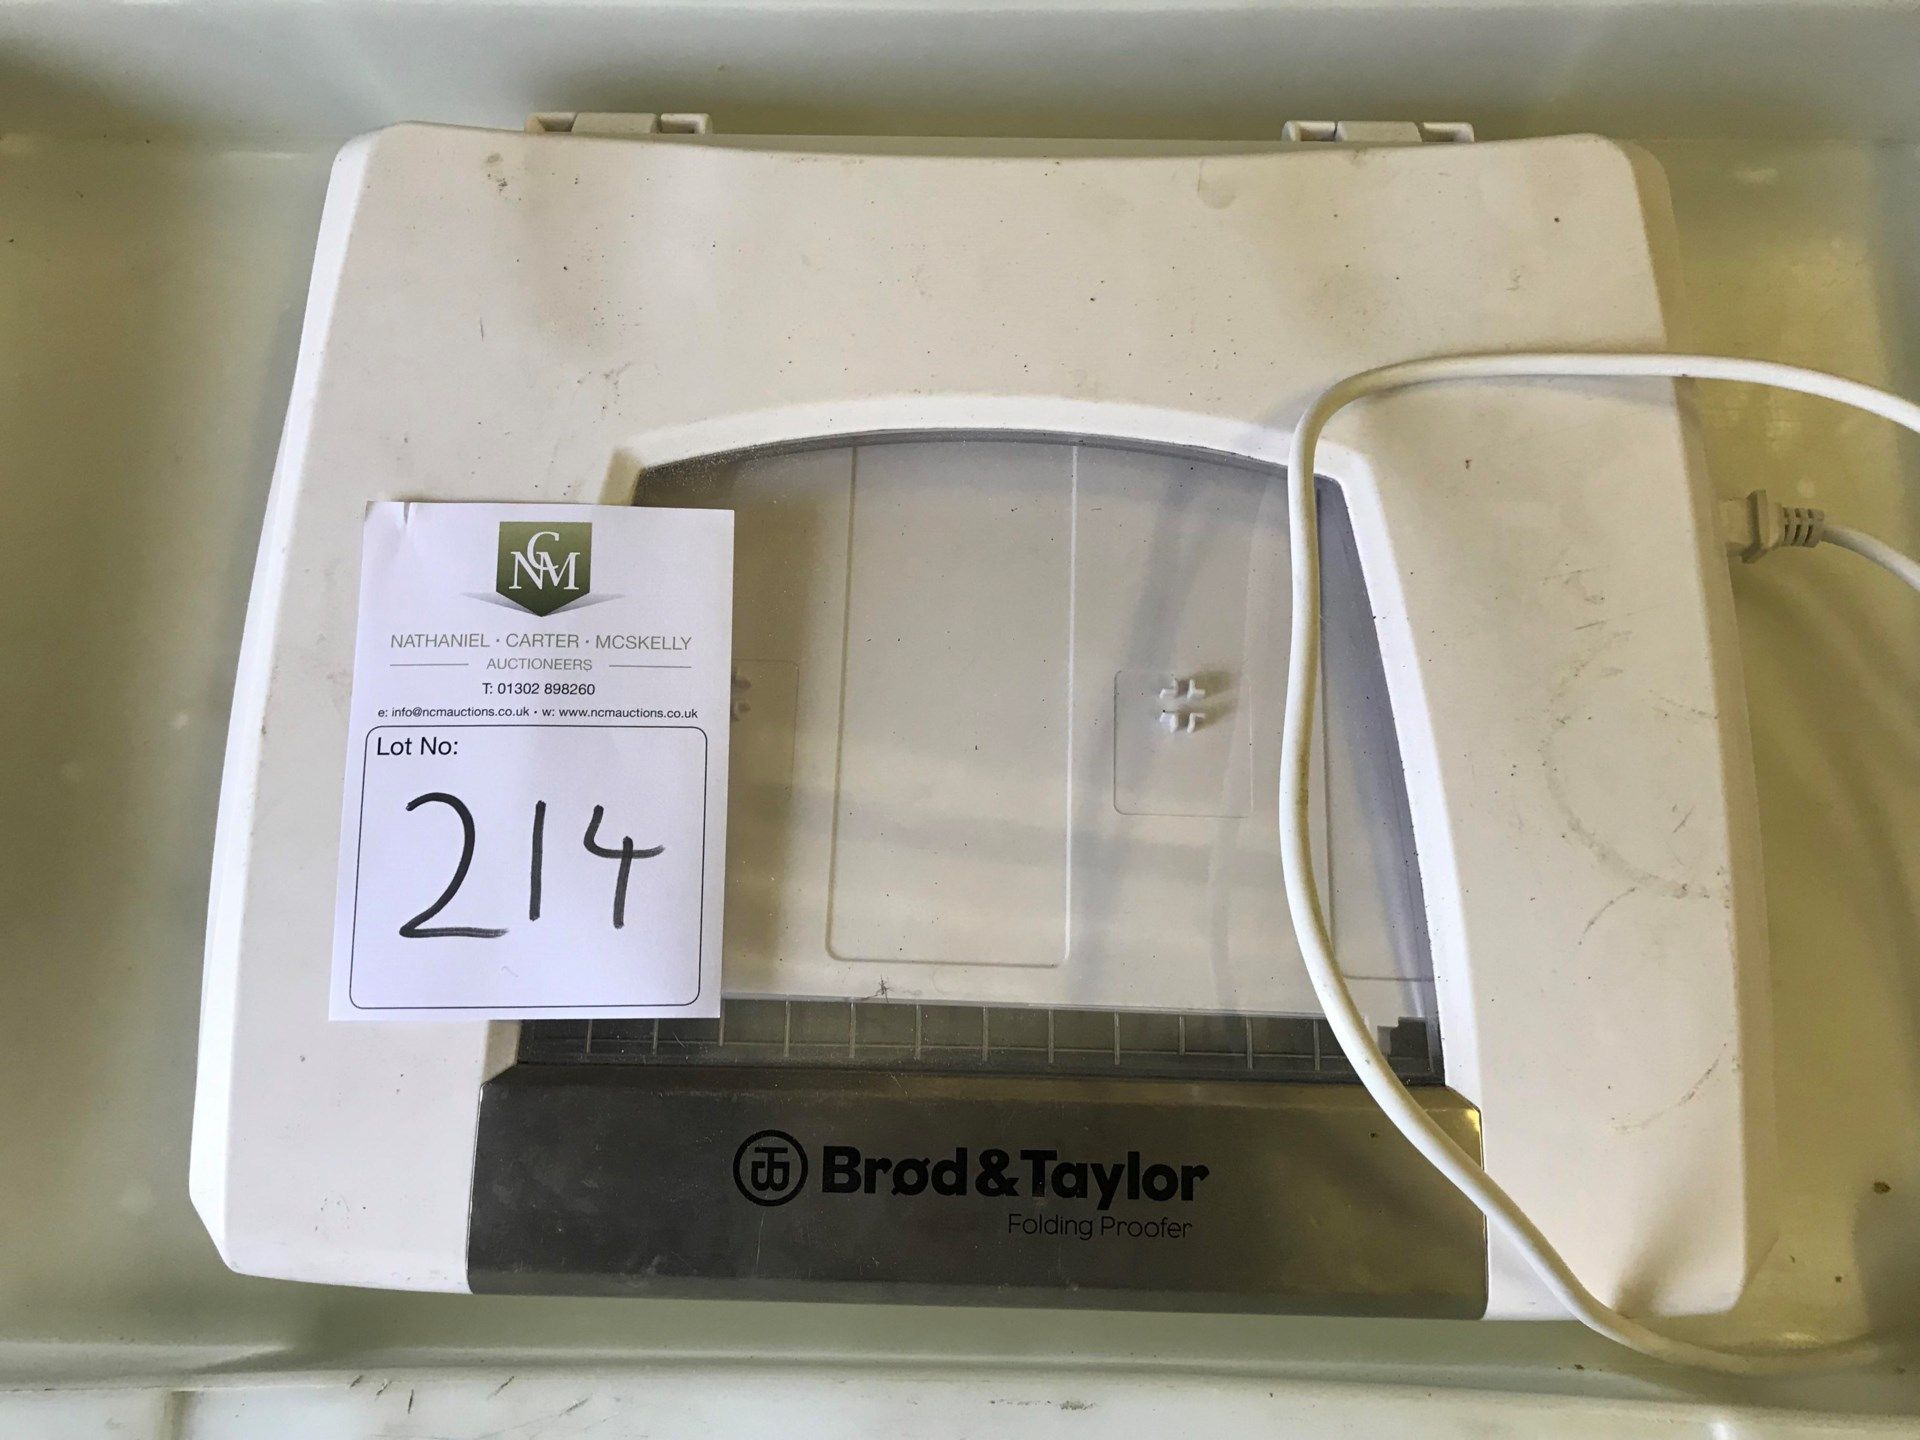 Brod & Taylor Folding Proofer - Image 3 of 3